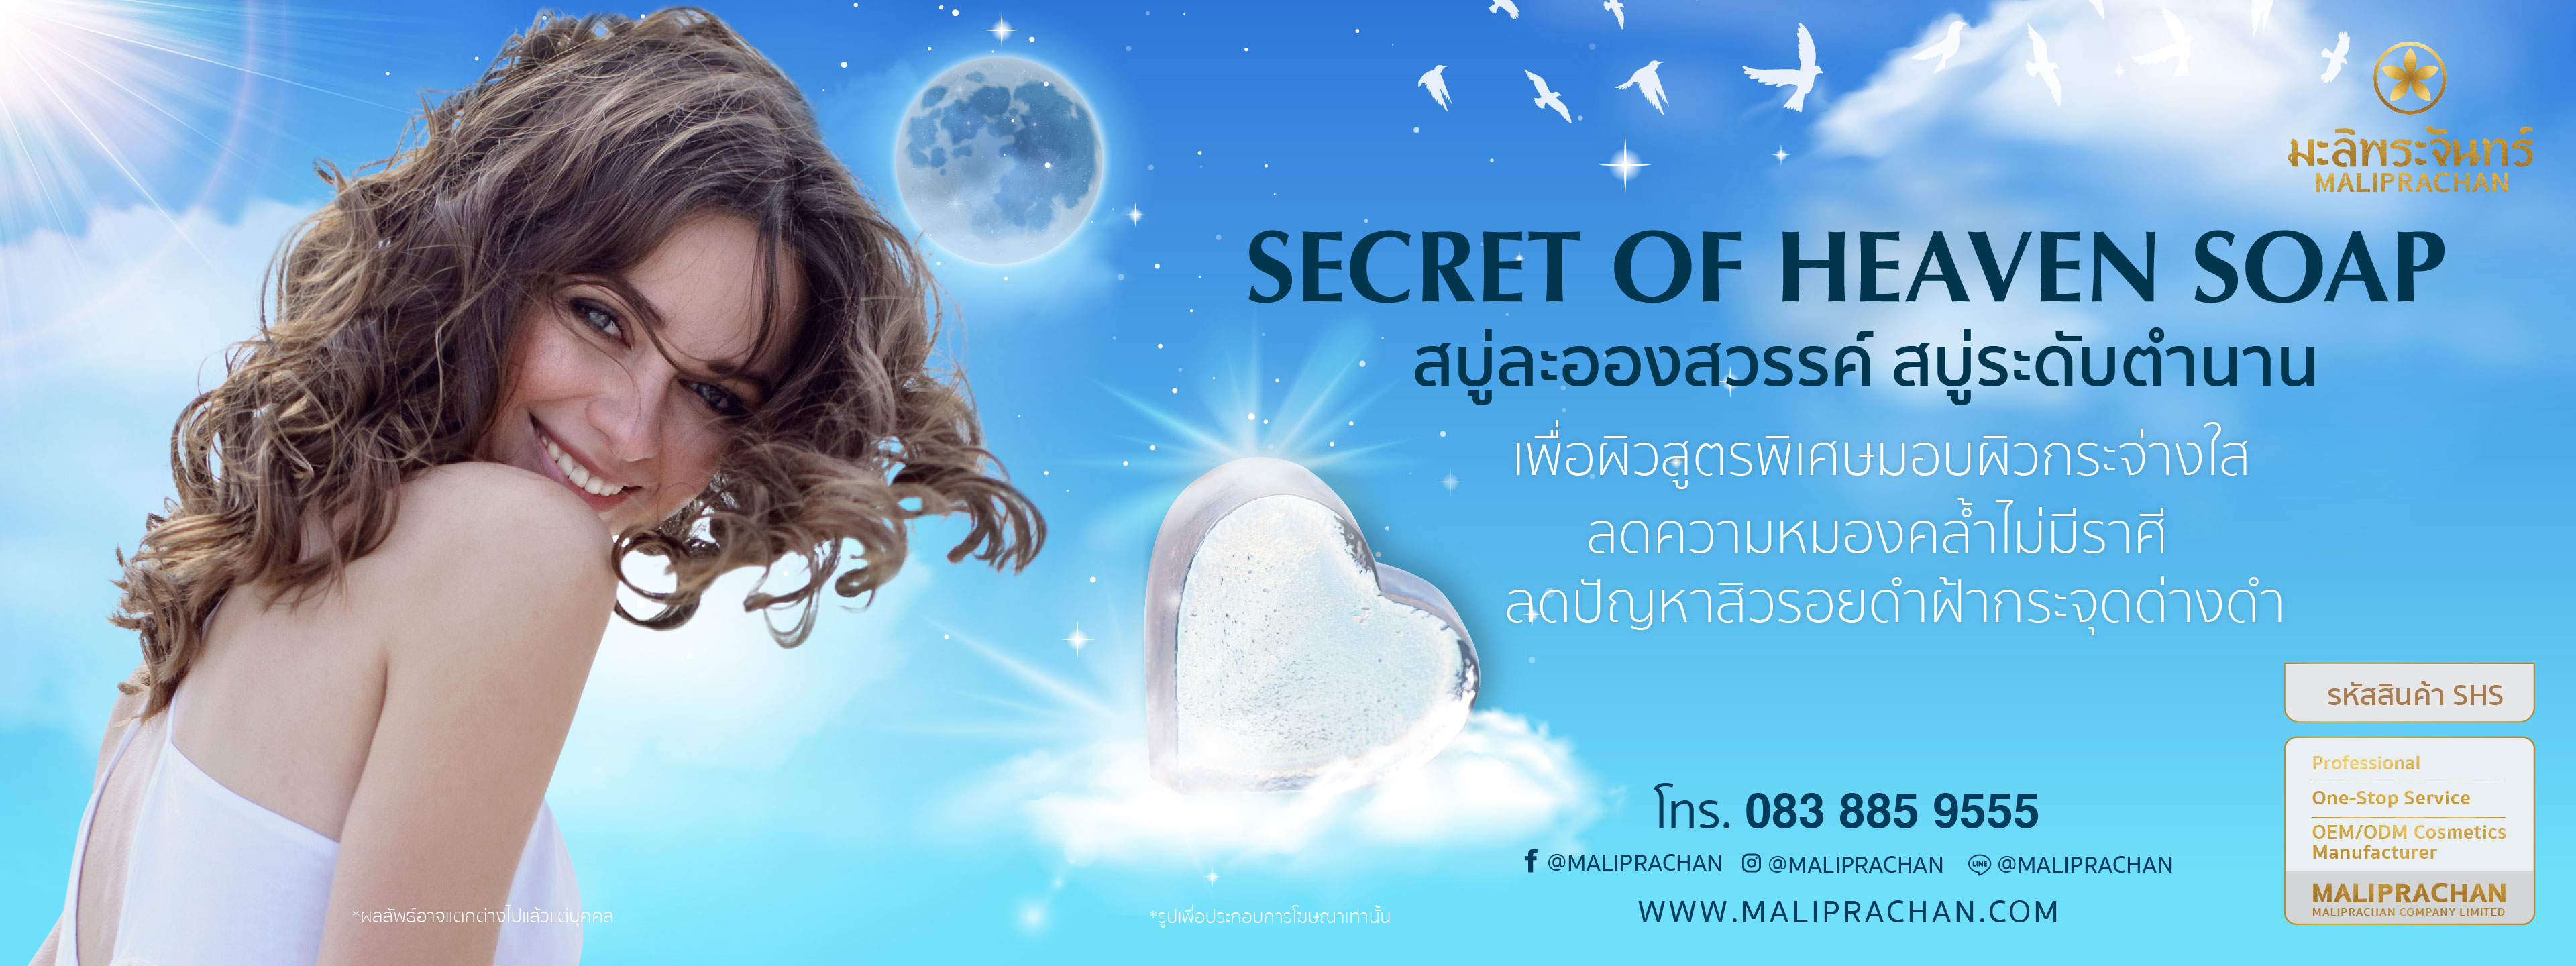 Secret of Heaven Soap